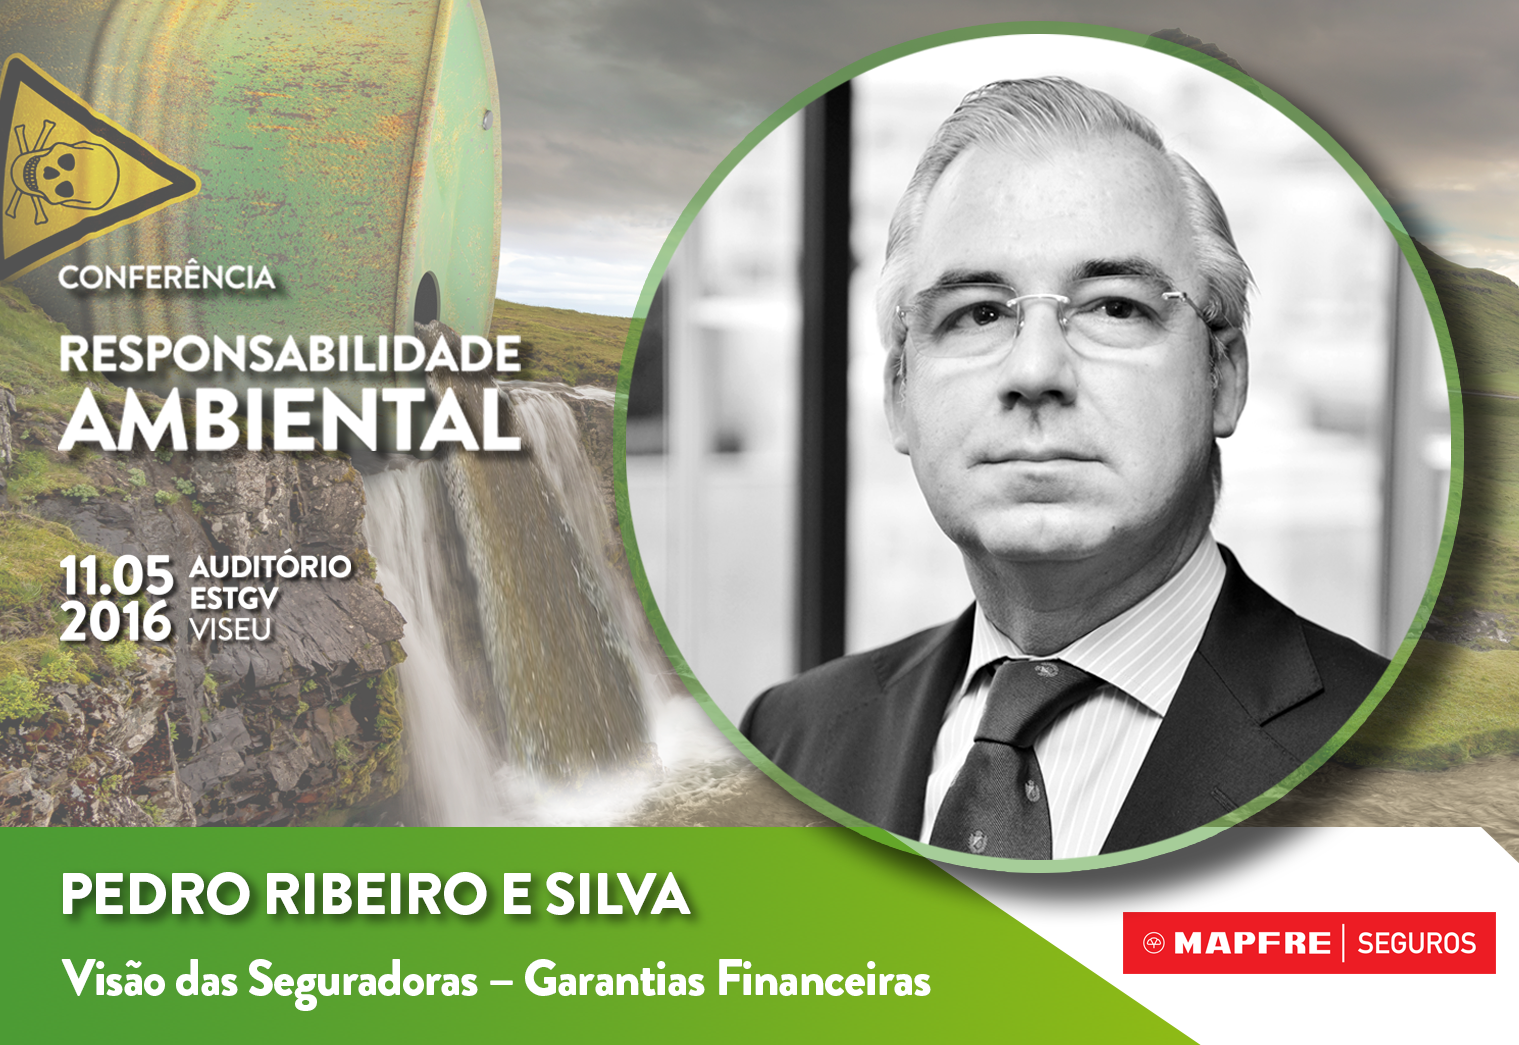 Pedro Ribeiro conferência responsabilidade ambiental